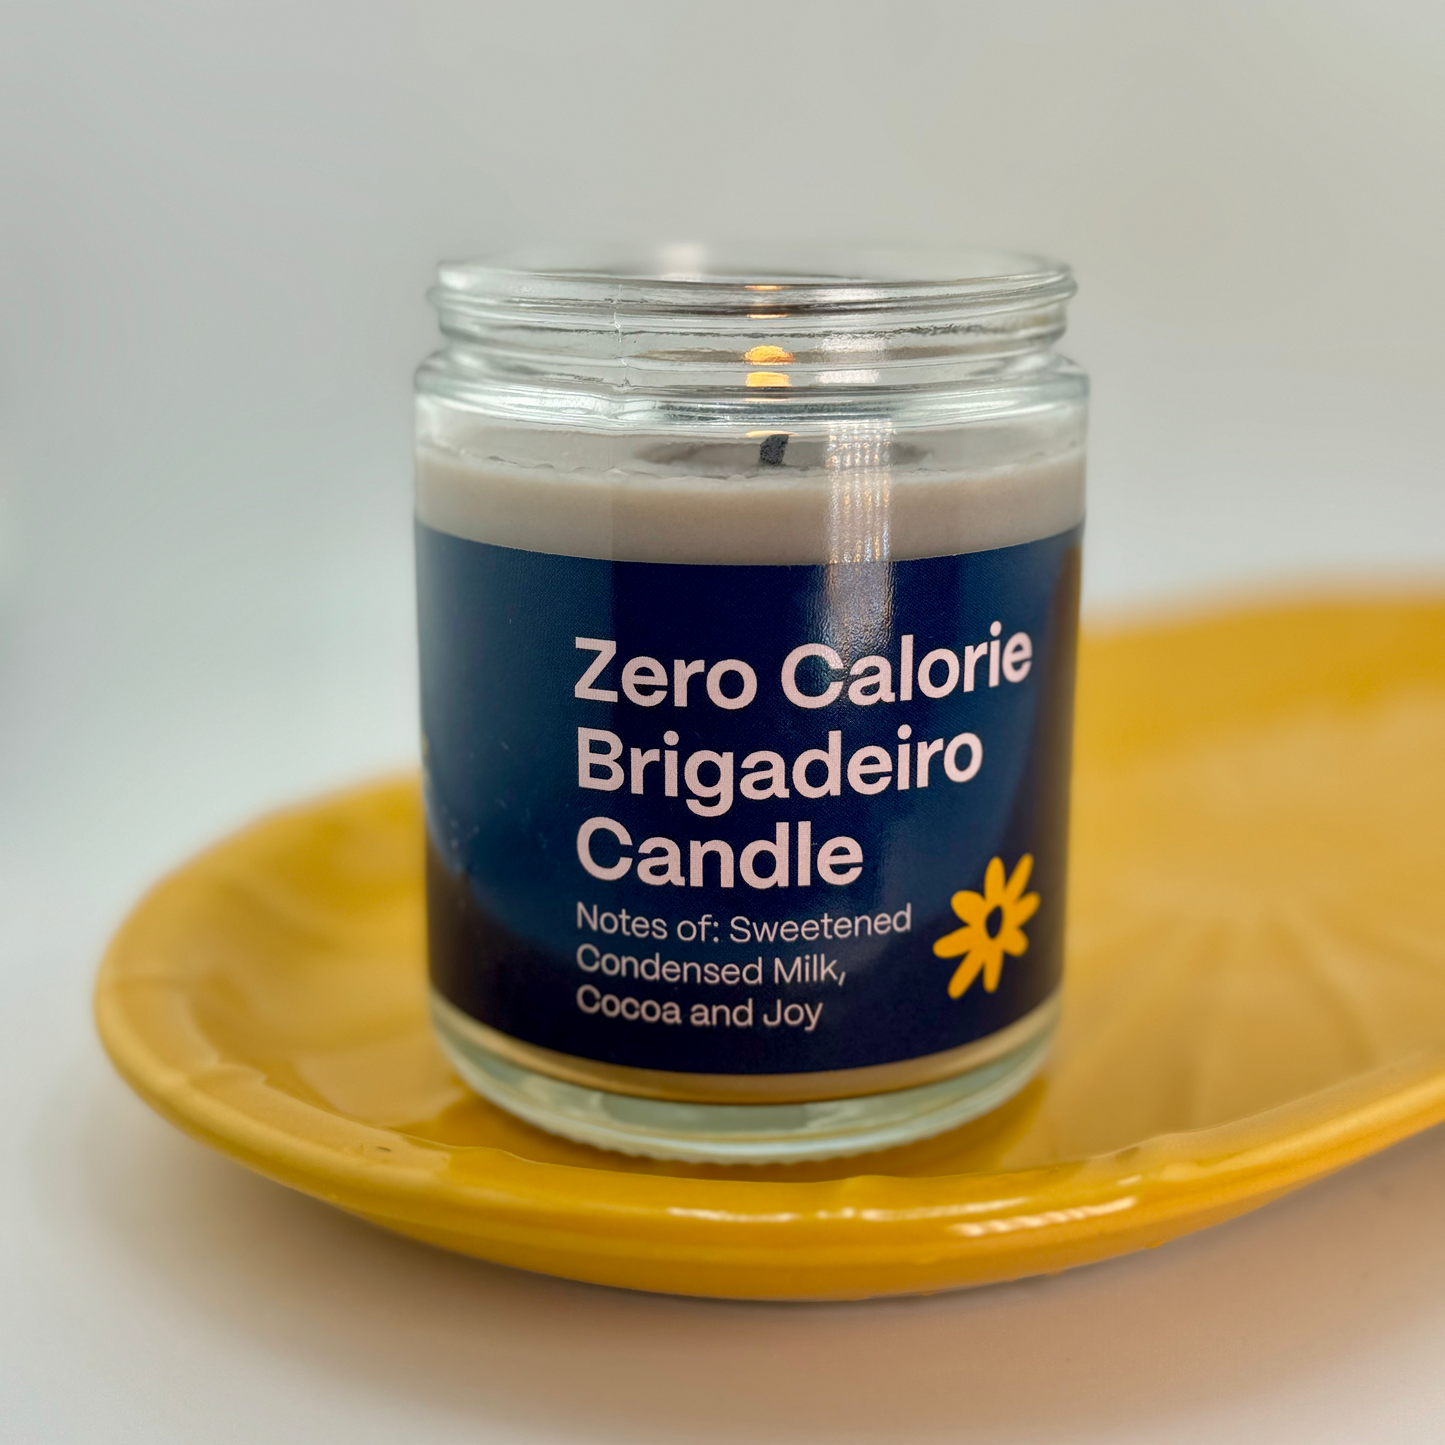 Zero Calorie Brigadeiro Candle